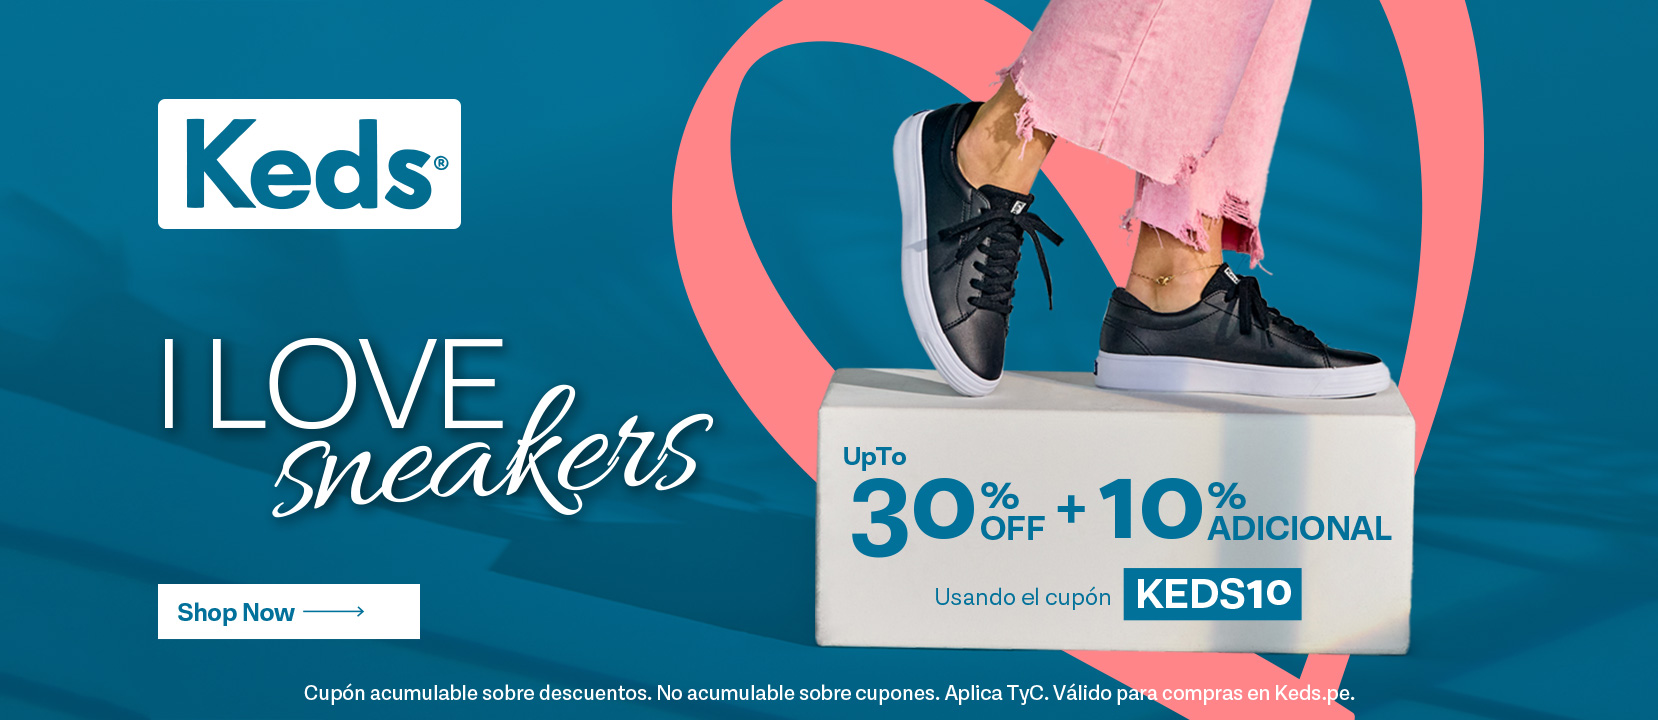 I Love Sneakers - KEDS10 / Keds